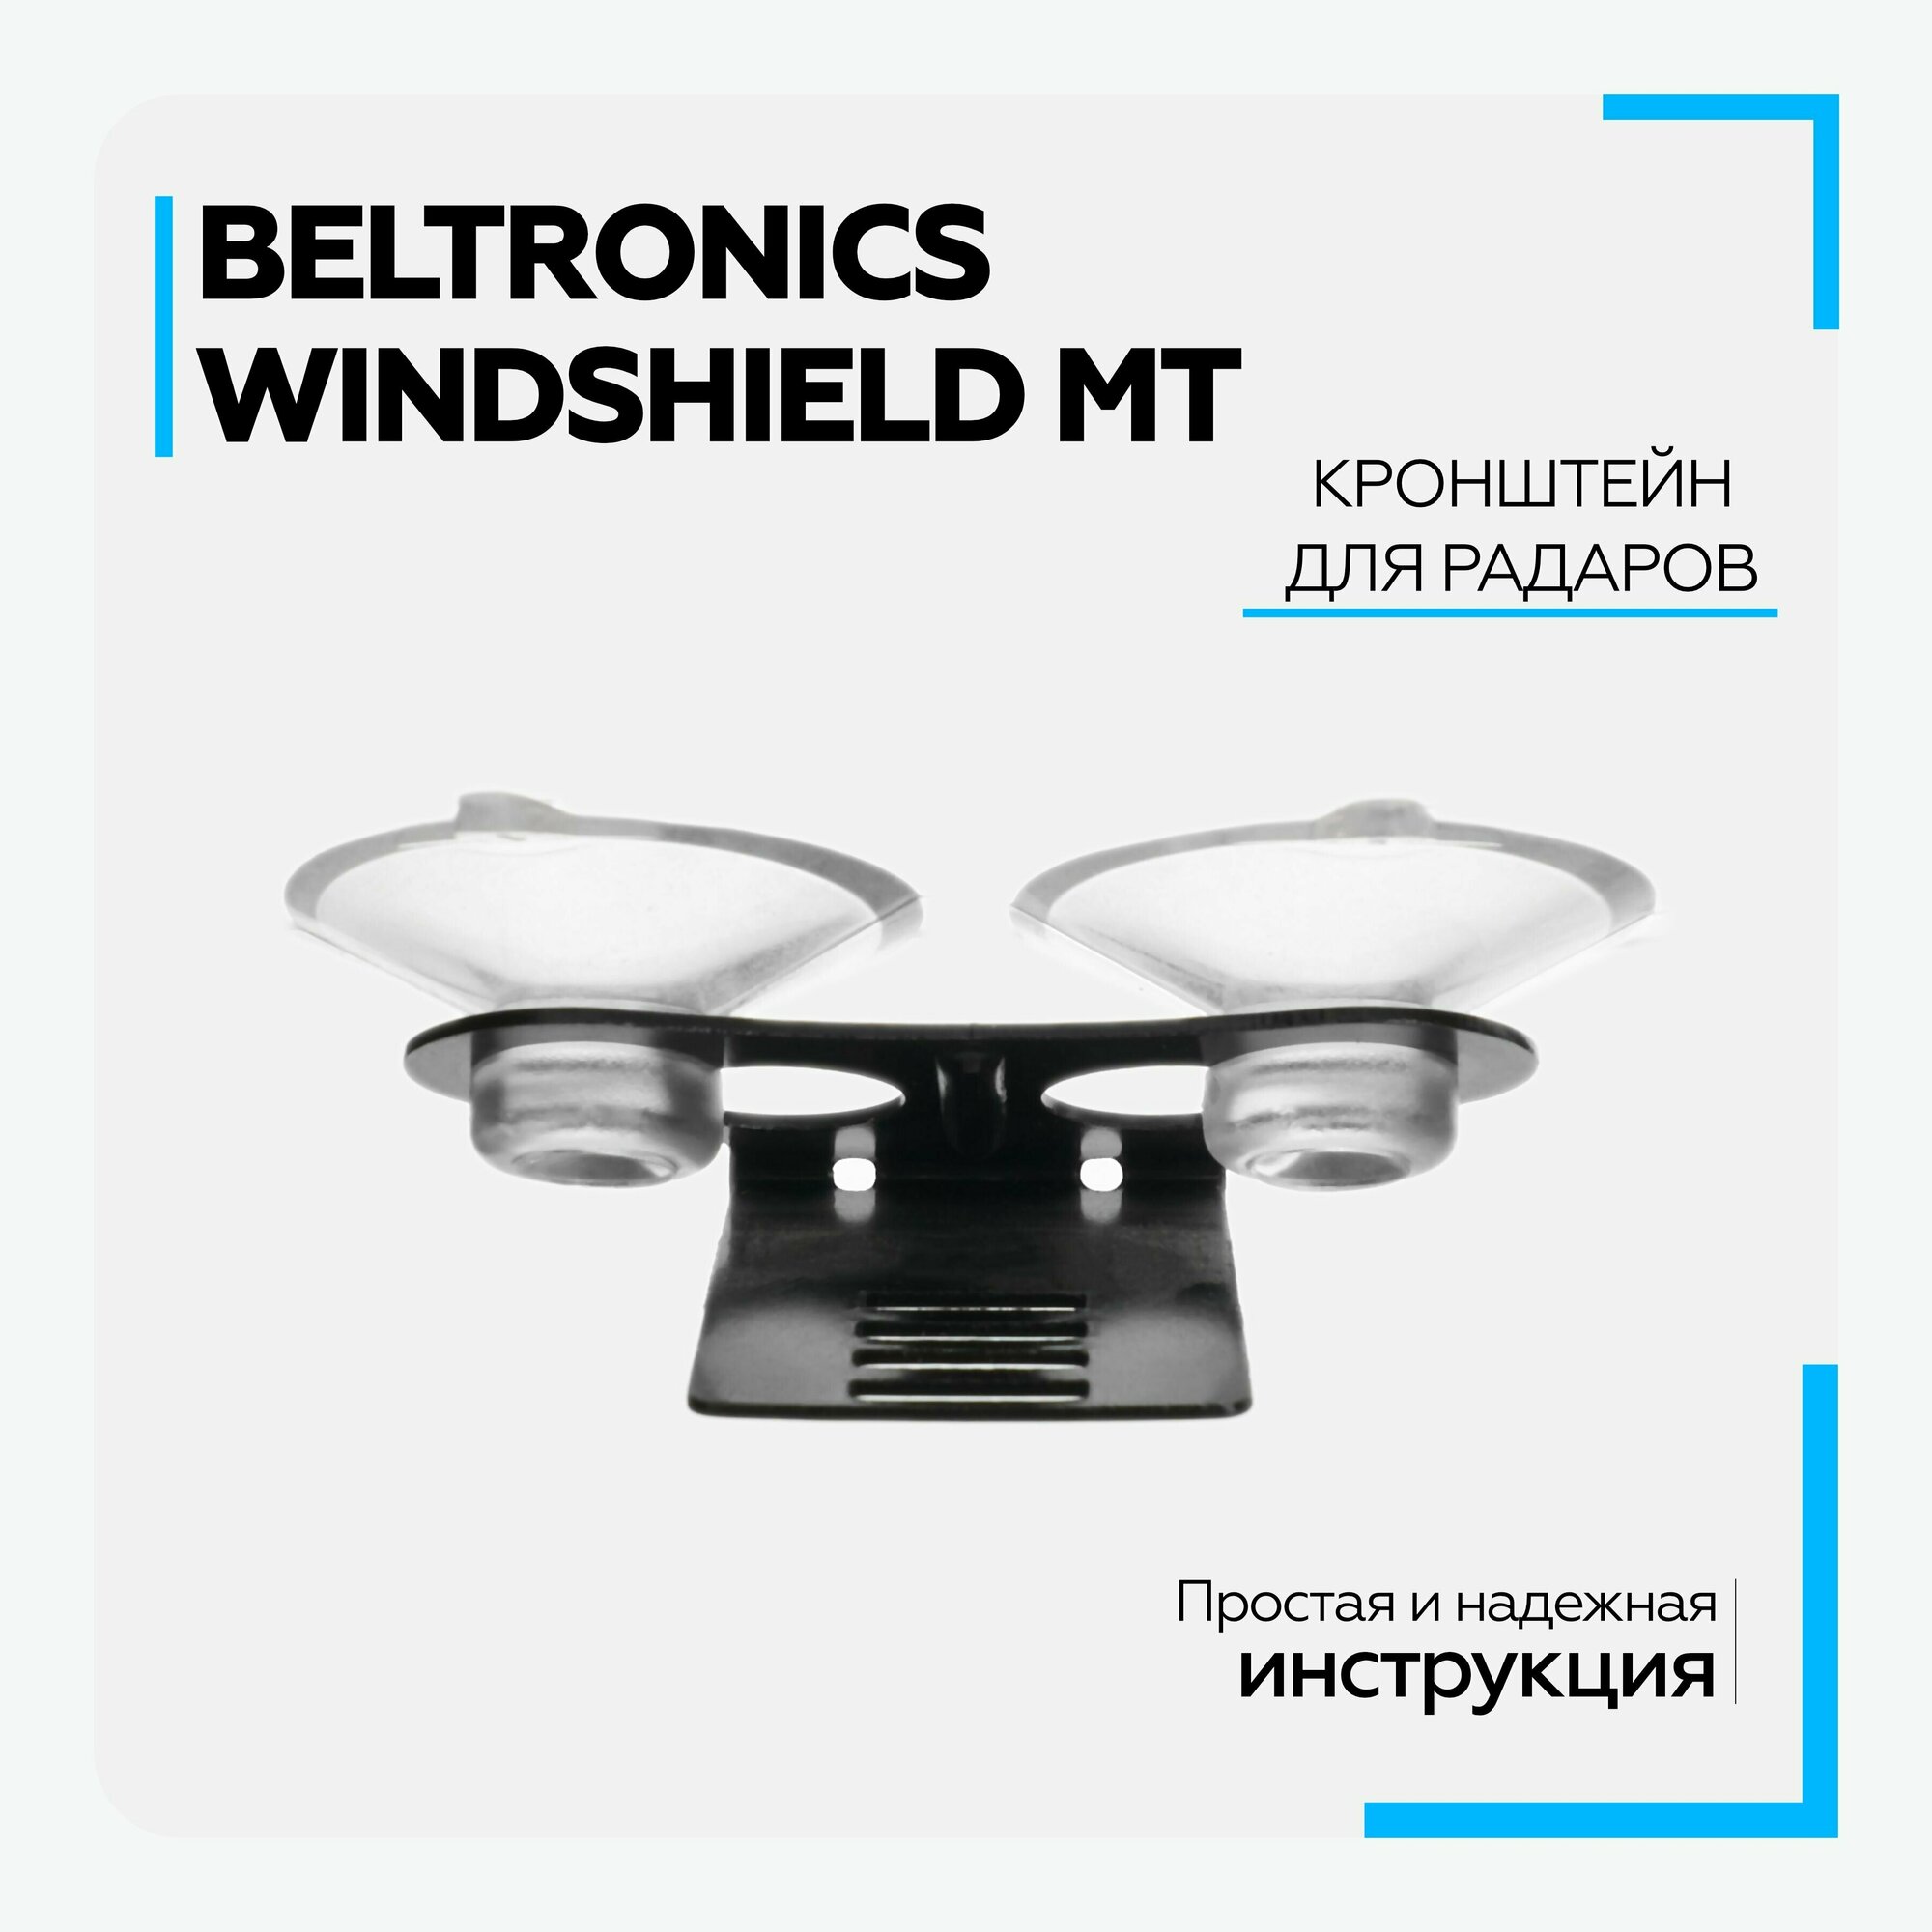 Кронштейн для радаров вакуумный универсальный Beltronics Windshield MT (в комплекте с 2 присосками)